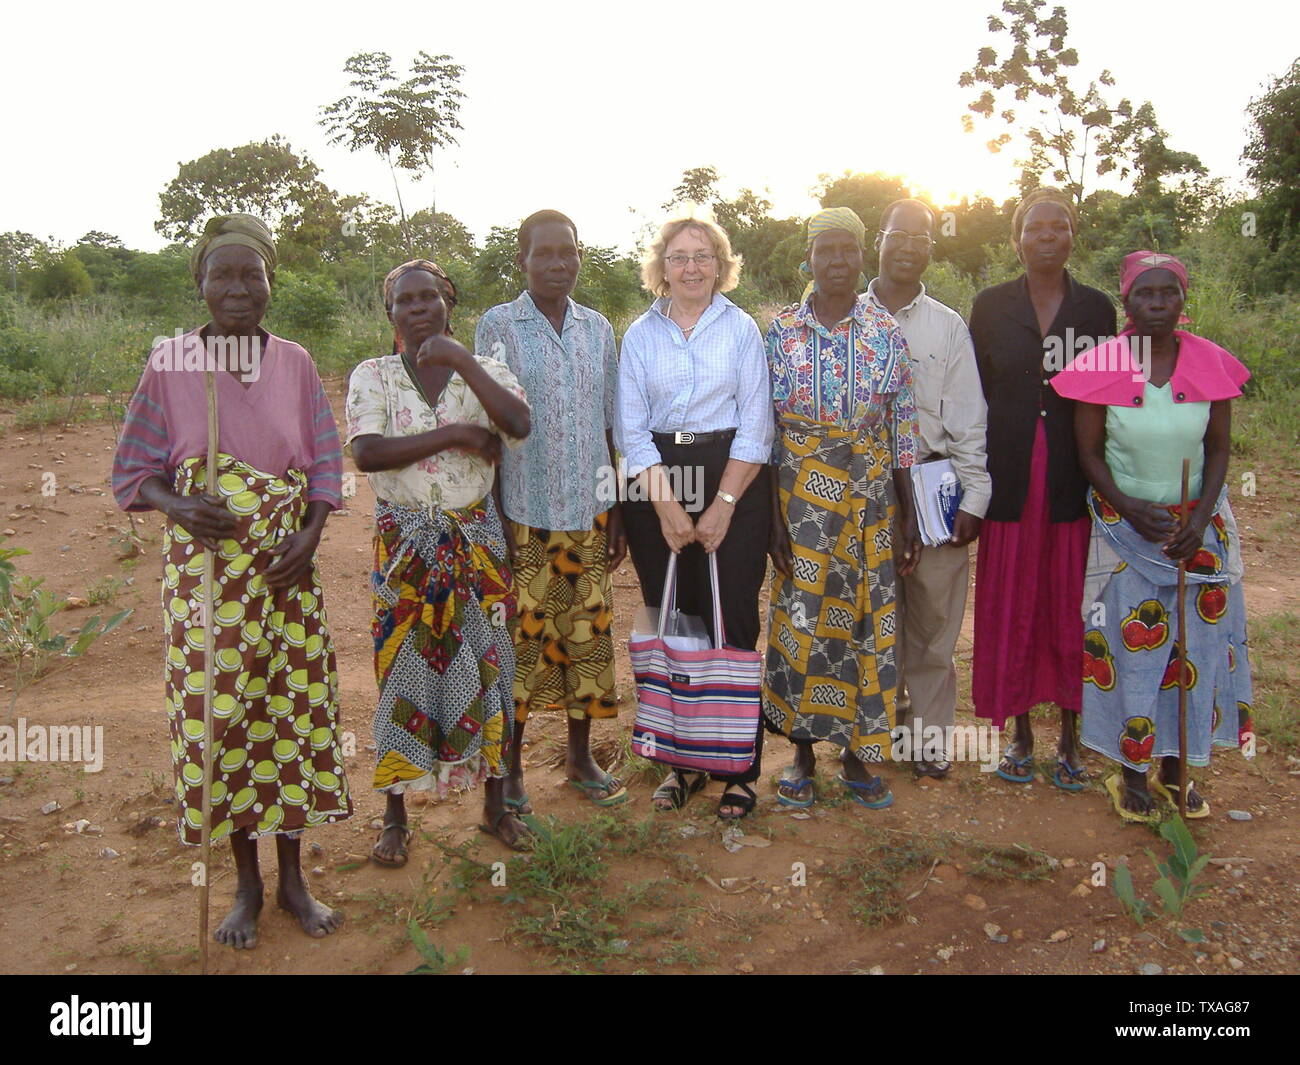 Esta es una foto de representantes de pueblos de la Región Norte de Uganda, y de una de las agencias de desarrollo en América del Norte. Fue tomada en el otoño de 2004 en la región norte de Uganda.; 12 de febrero de 2007 (fecha de carga original); obra Propia; Michael Shade en inglés; pedia Foto de stock